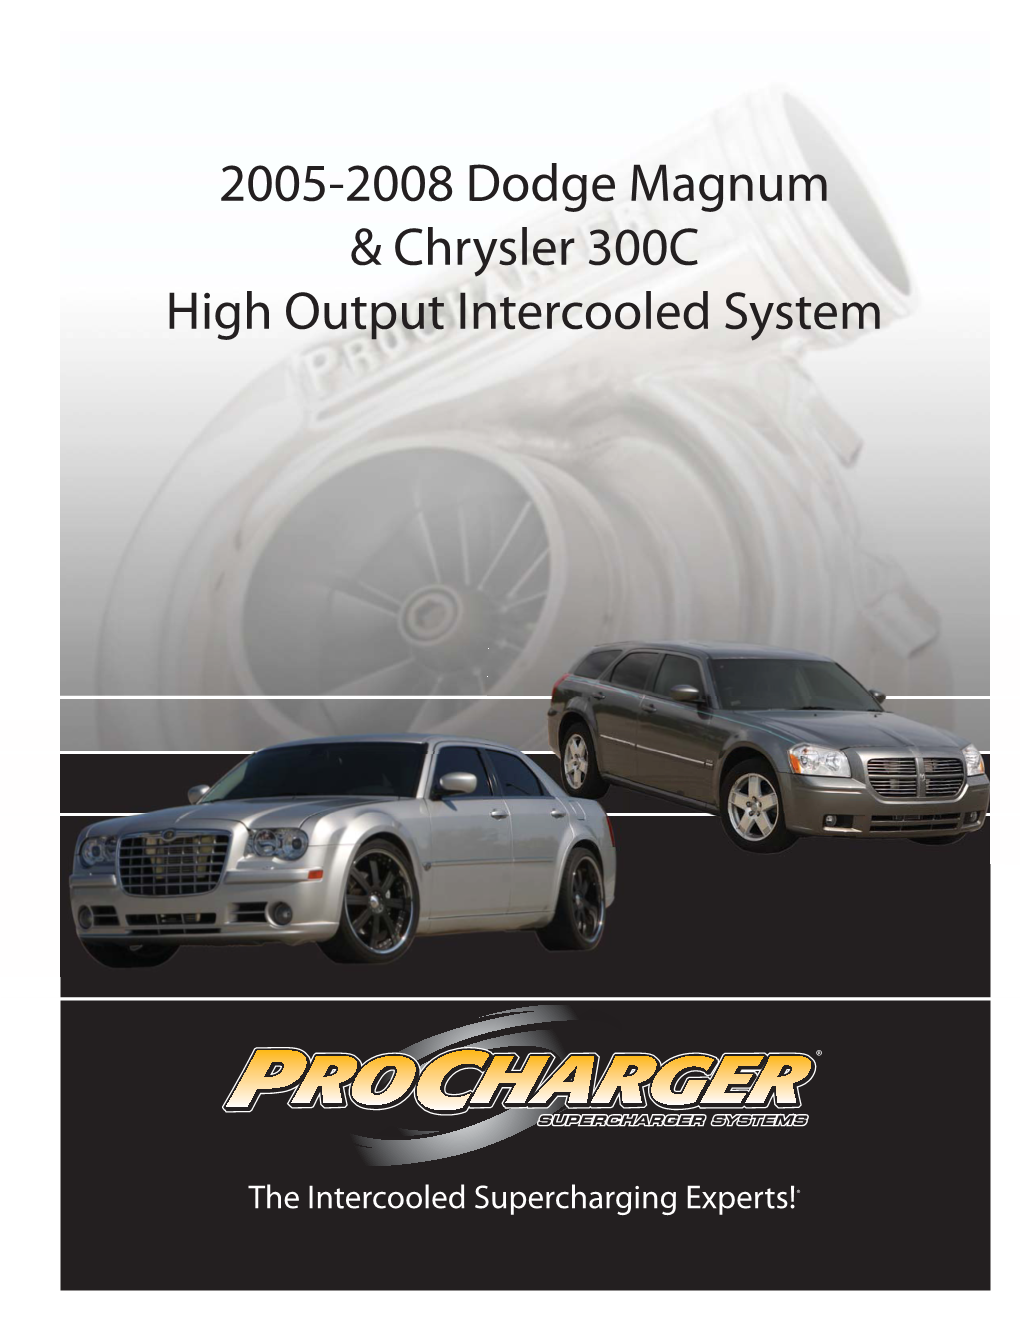 2005-2008 Dodge Magnum & Chrysler 300C High Output